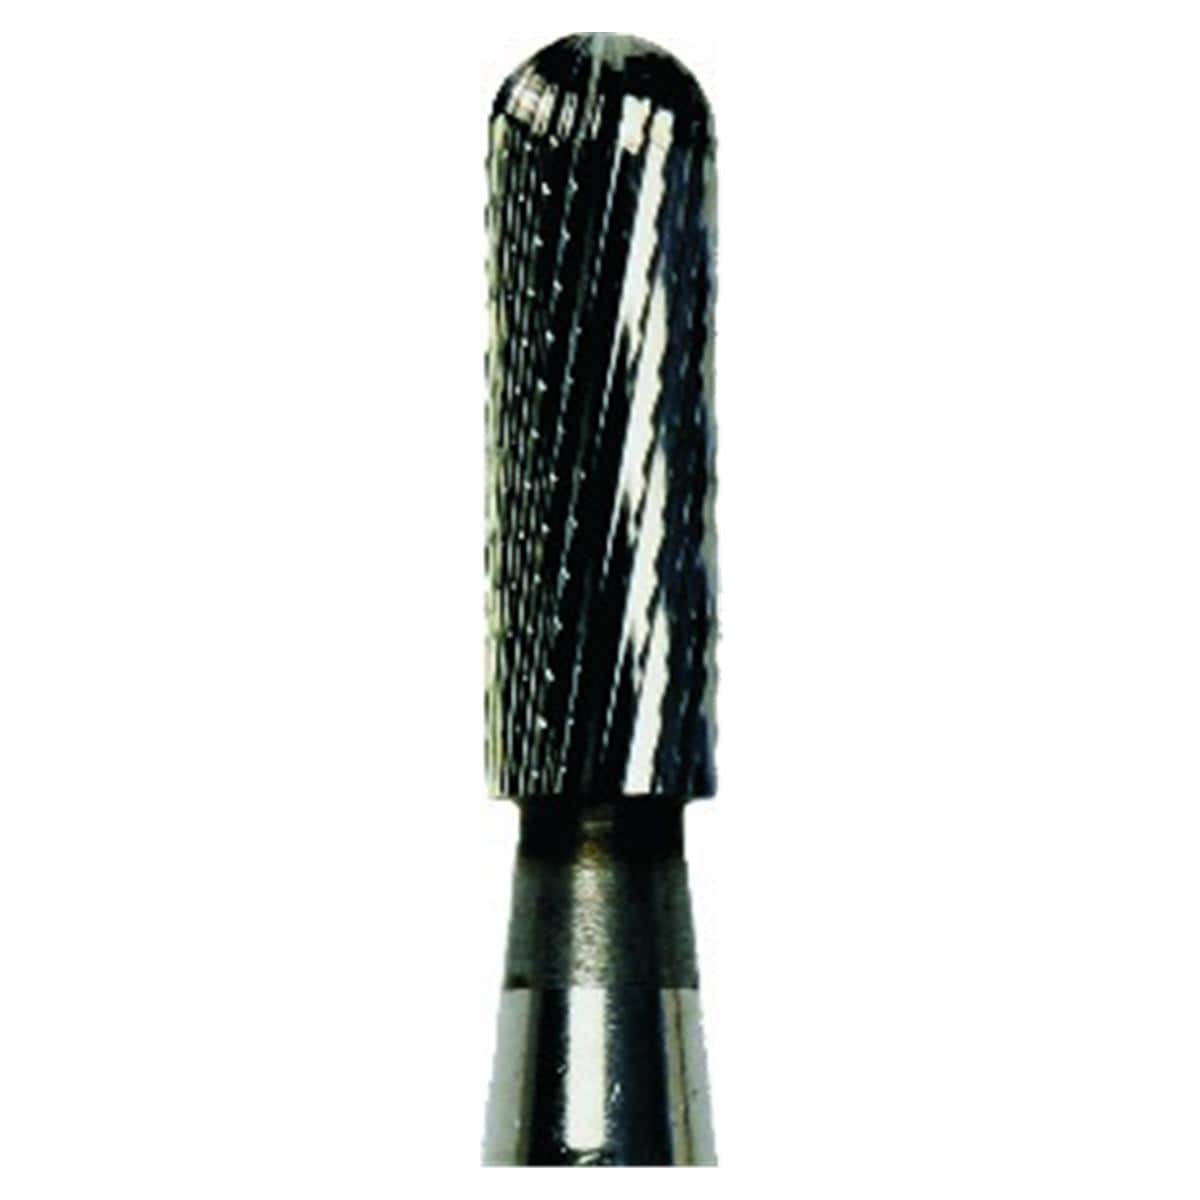 Fraise tungstne carbide noire HORICO - S141 NE - 023 mm - L'unit